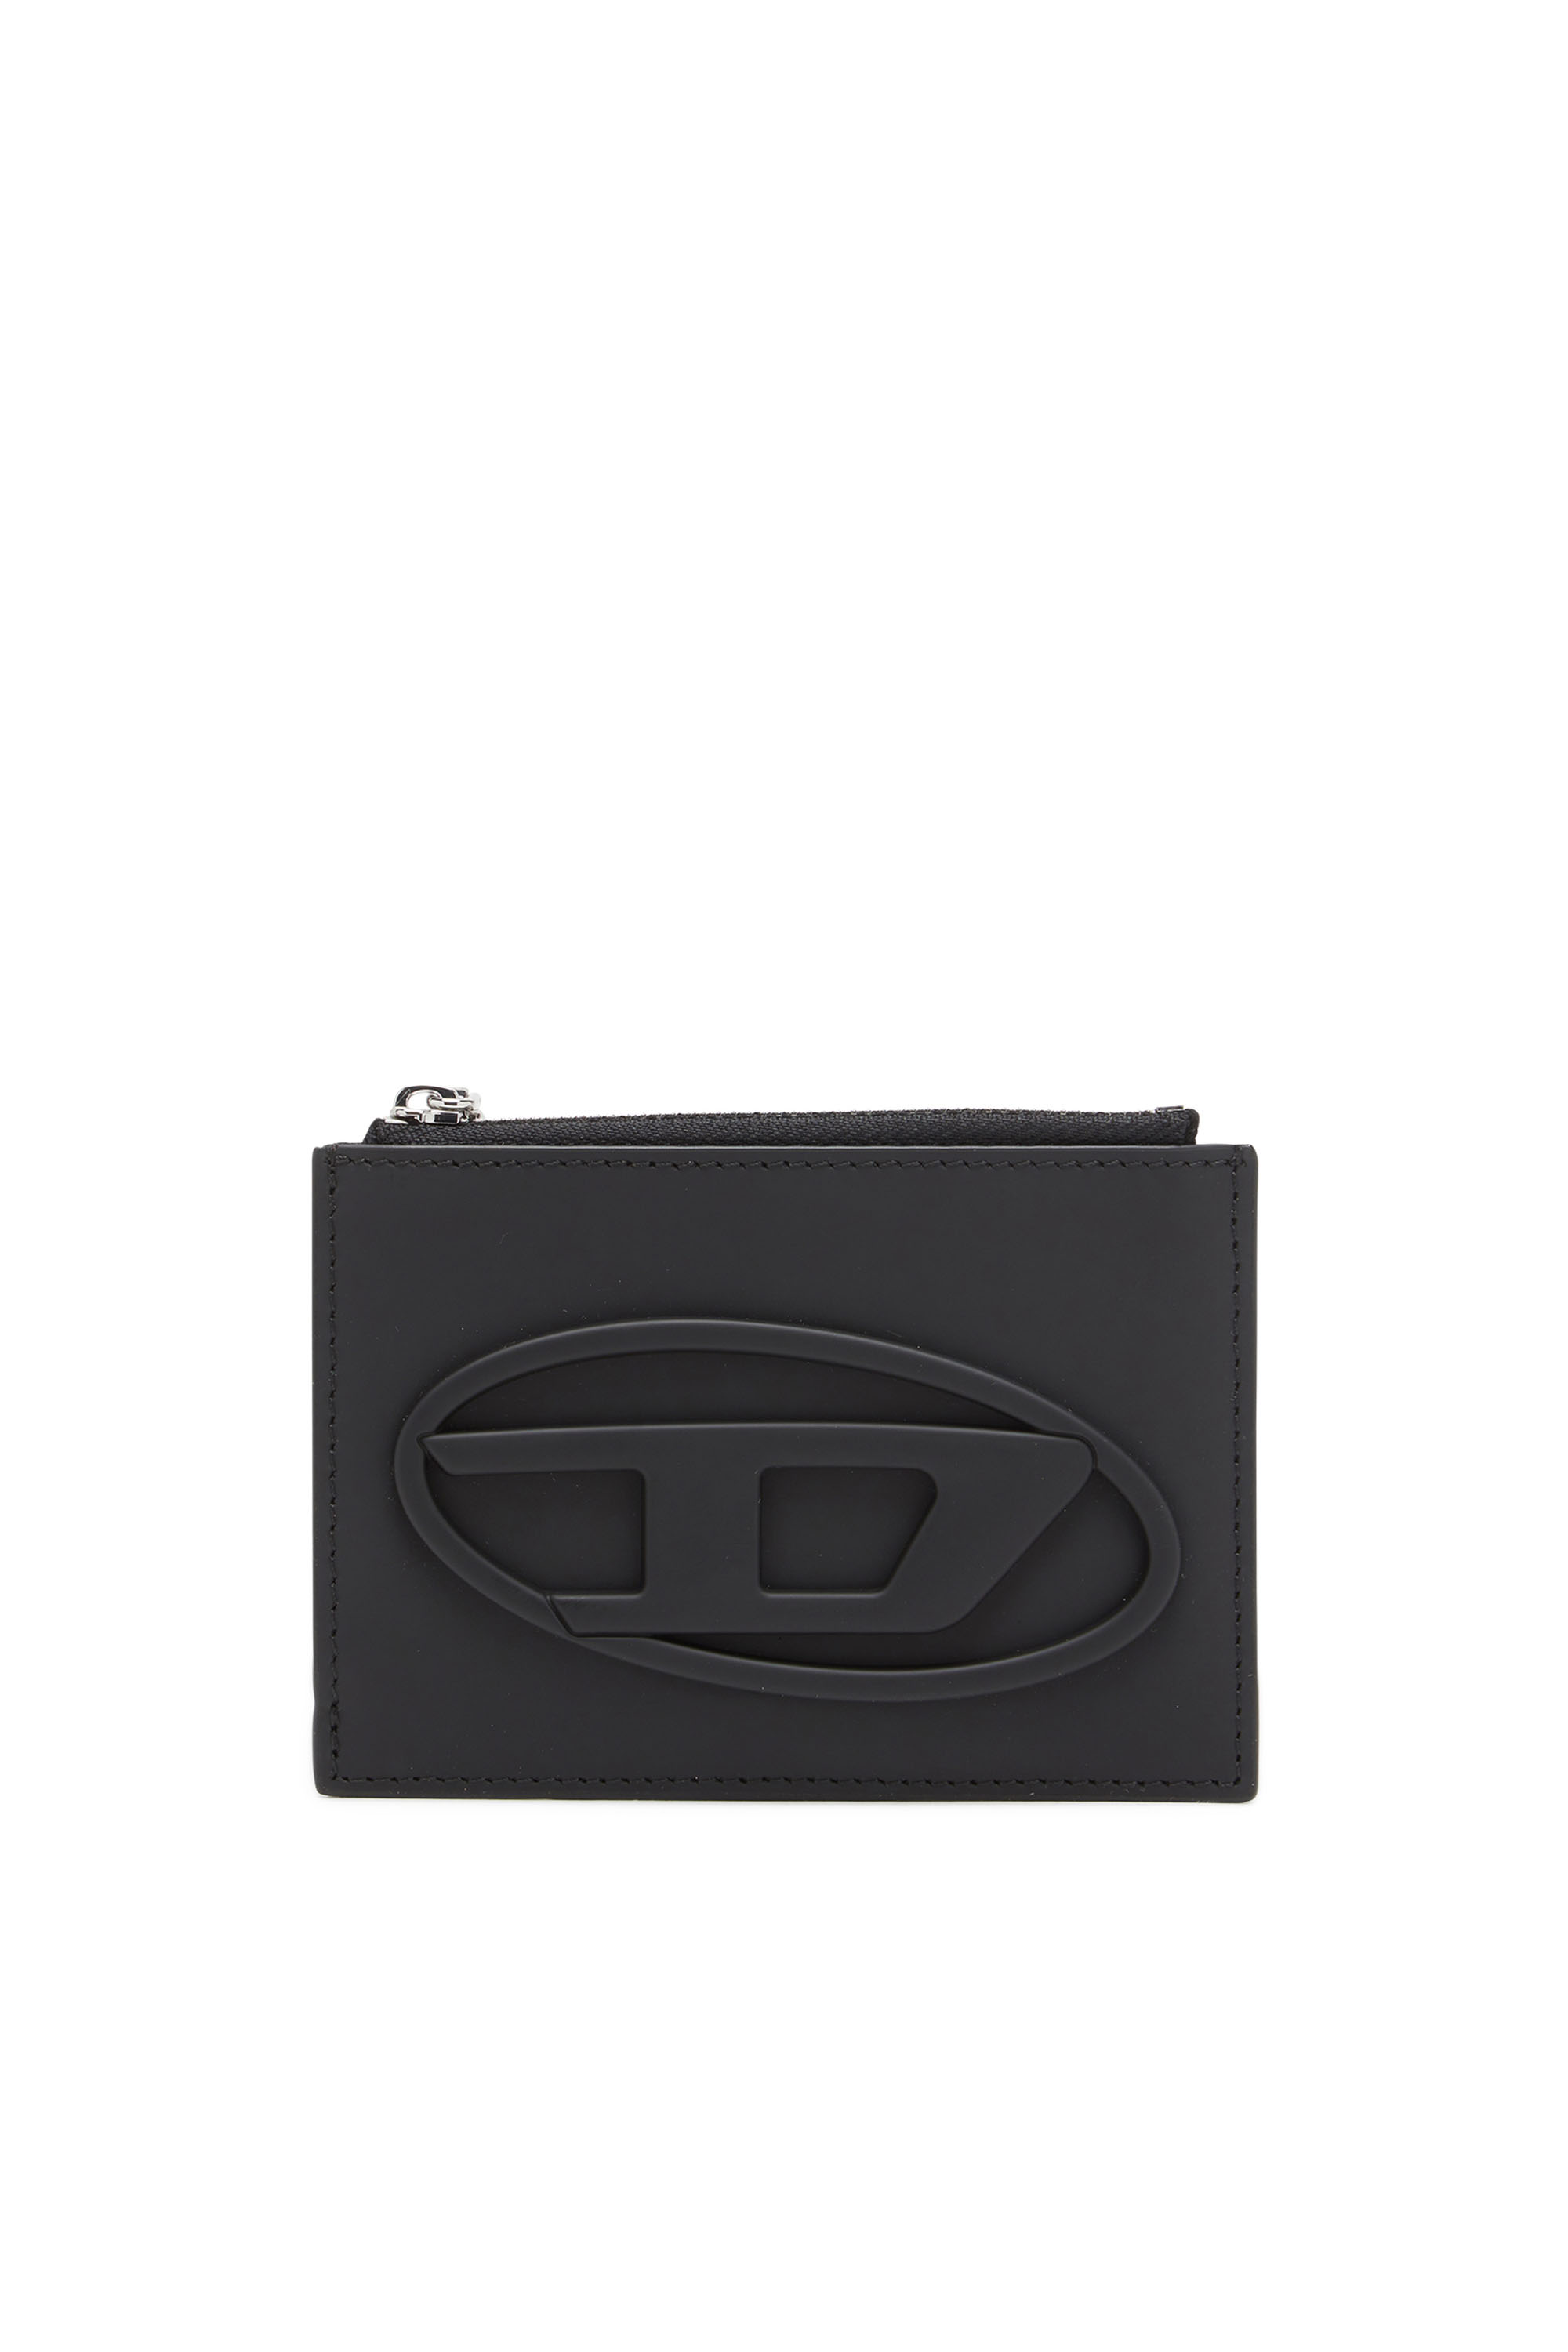 Diesel - 1DR CARD HOLDER I, Noir - Image 1